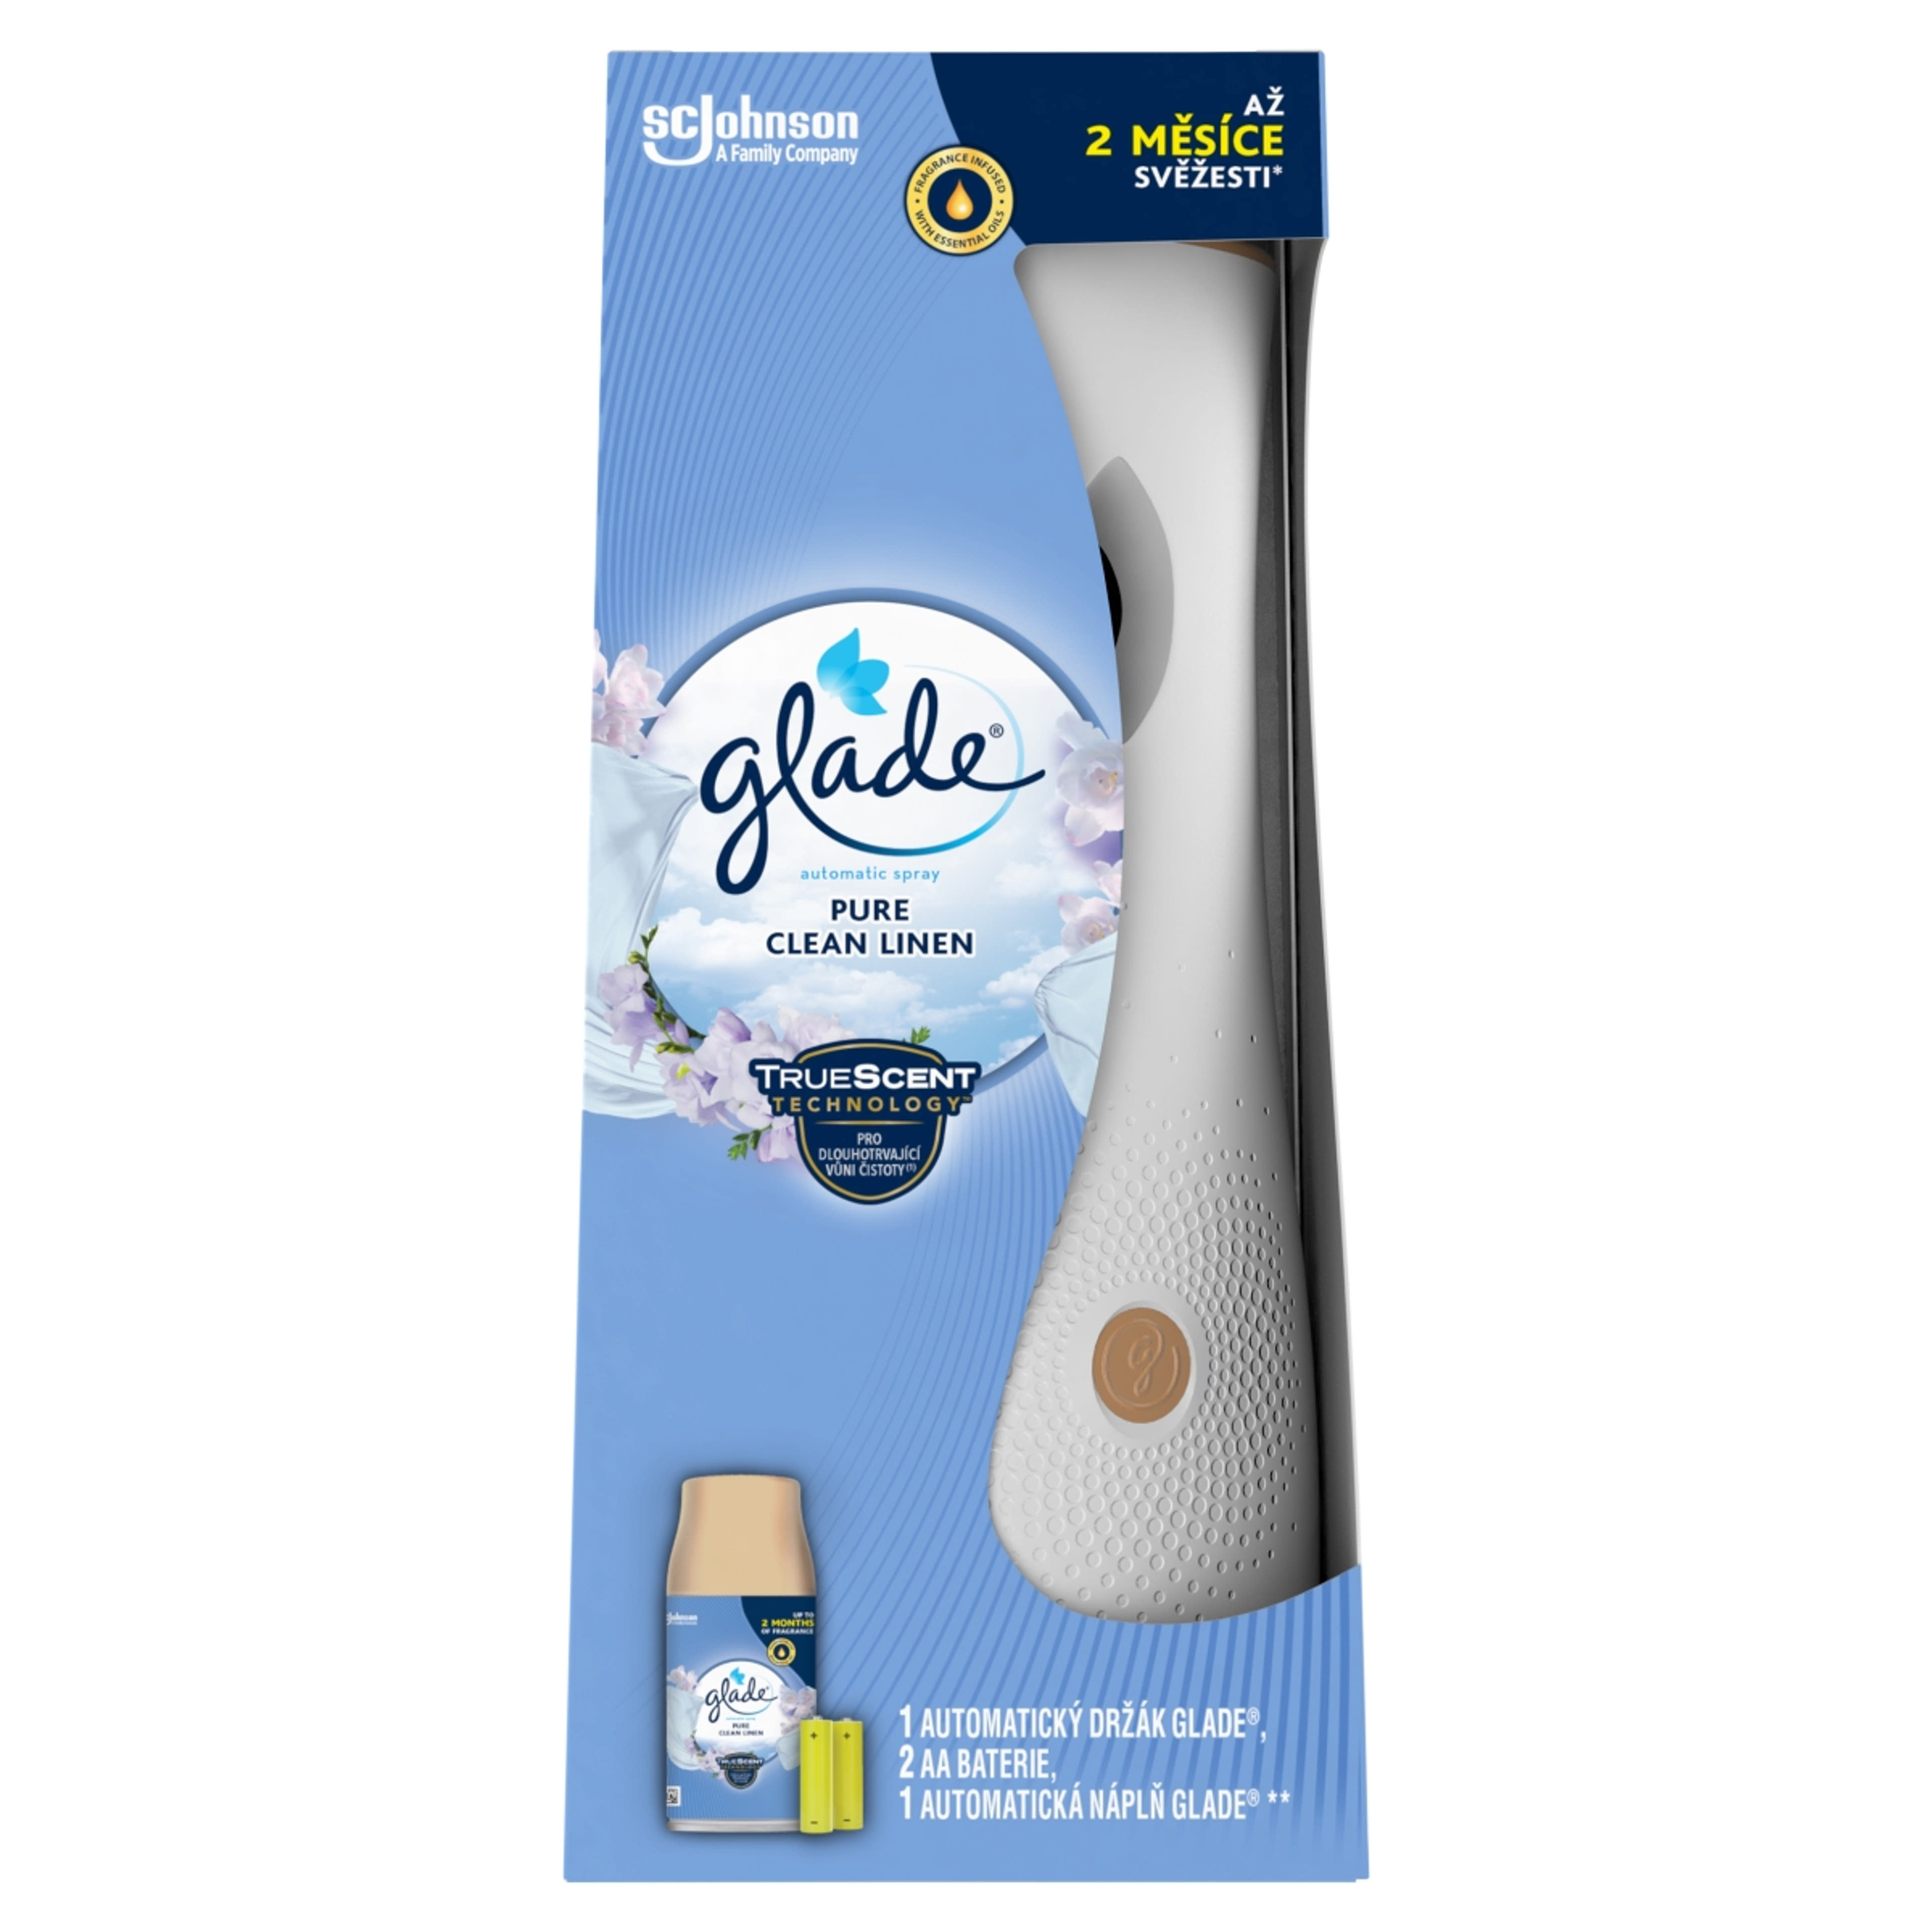 Glade Pure Clean Linen automata légfrissítő készülék - 269 ml